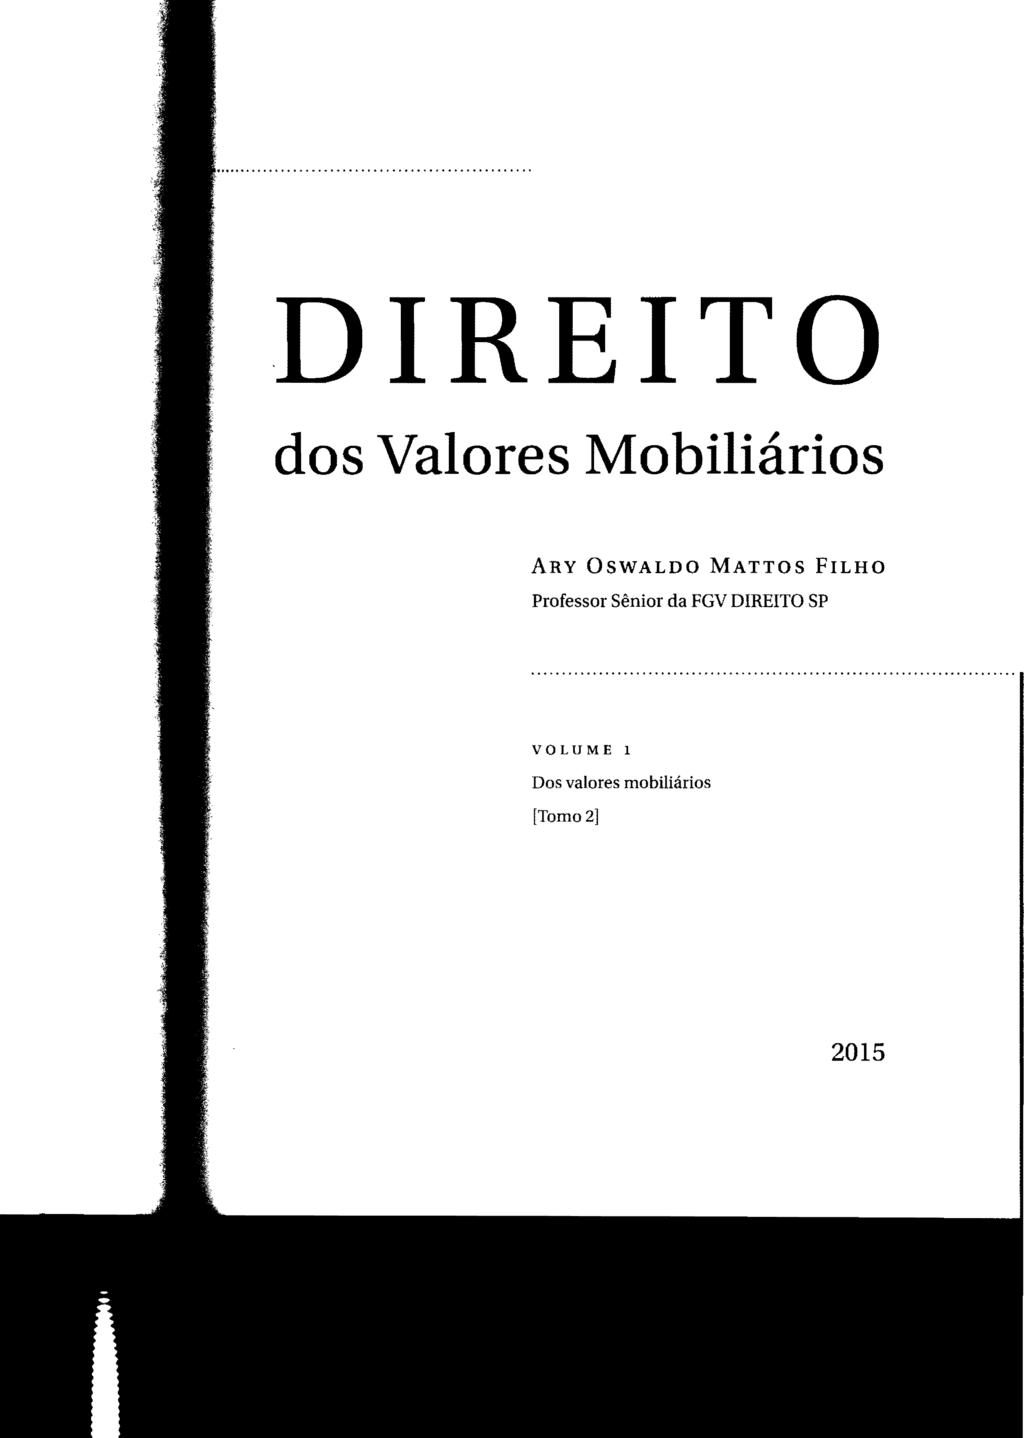 DIREITO dos Valores Mobiliários ARY OSWALDO MATTOS FILHO Professor